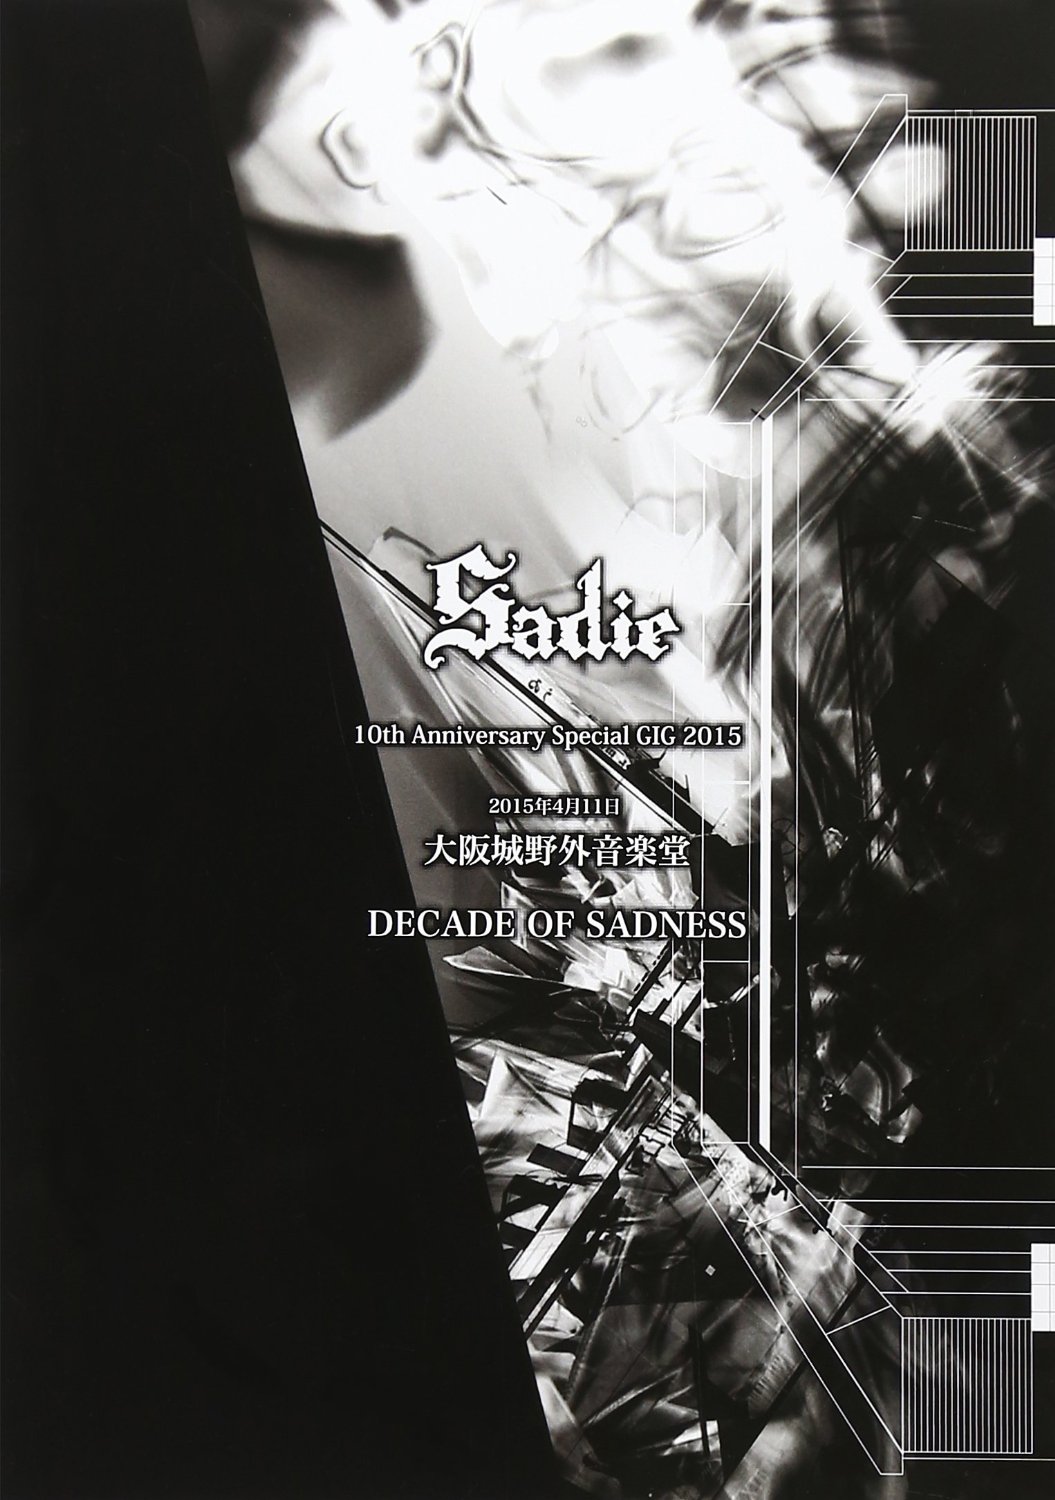 Sadie ( サディ )  の DVD 【通常盤】DECADE OF SADNESS at 20150411 大阪城野外音楽堂